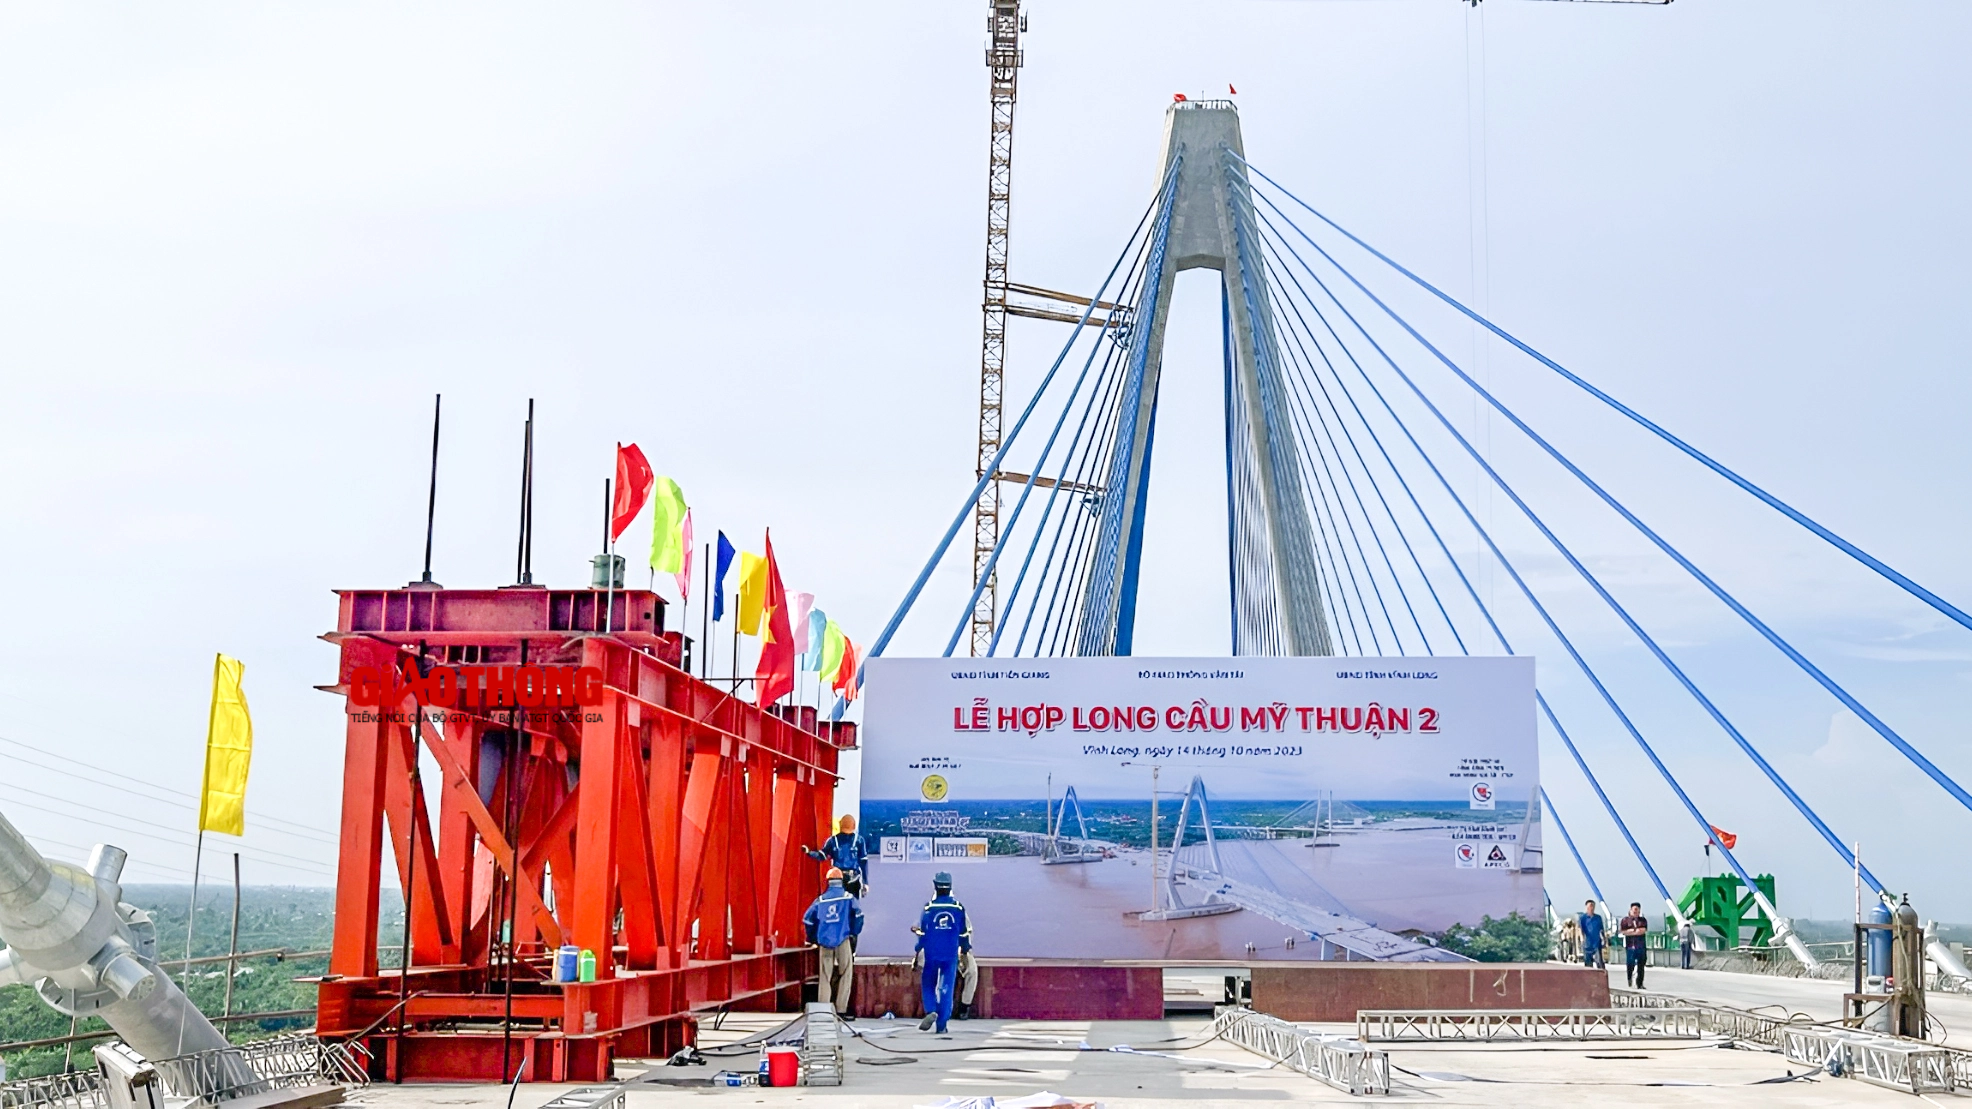 Cầu Mỹ Thuận 2 hợp long sớm 1 tháng so kế hoạch - Ảnh 3.